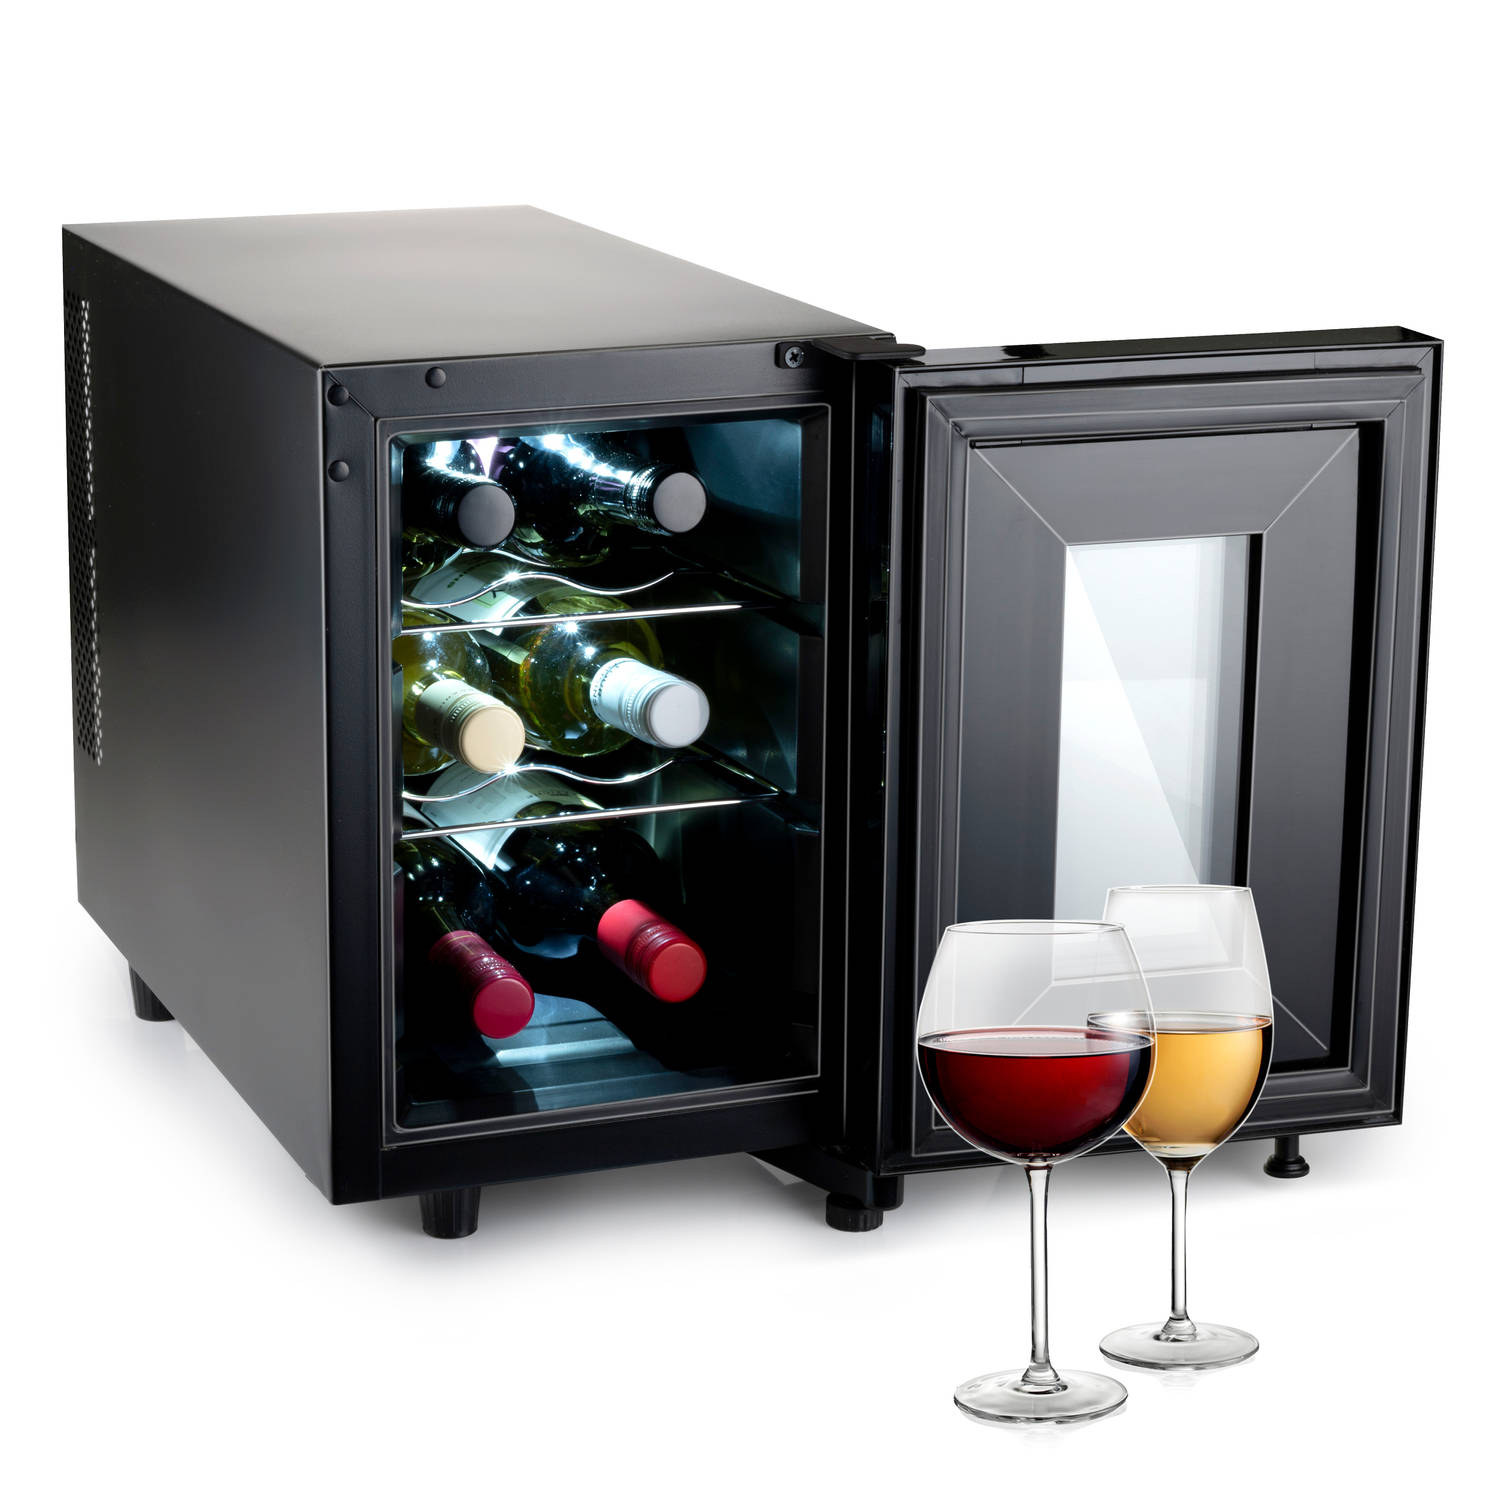 Alpina Wijnkoelkast 230v 6 Flessen Instelbare Temperatuur 11°c Tot 18°c Digitale Display Zwart